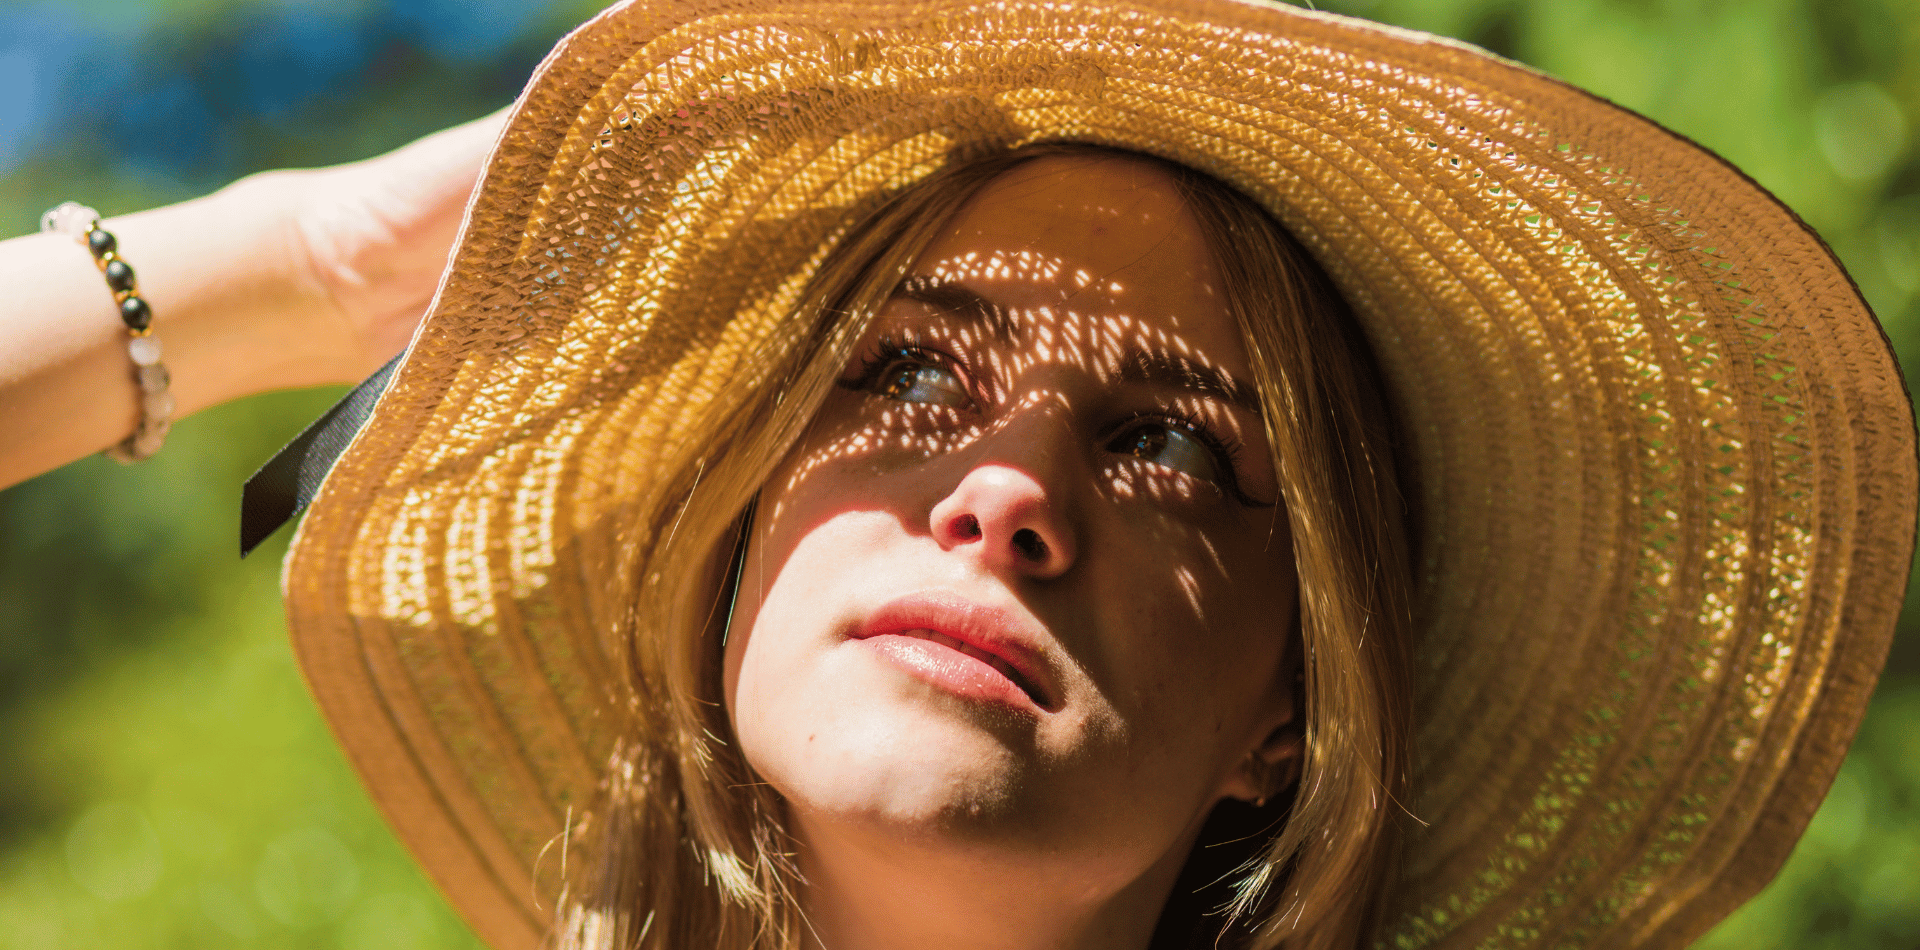 Girl wearing a sun hat